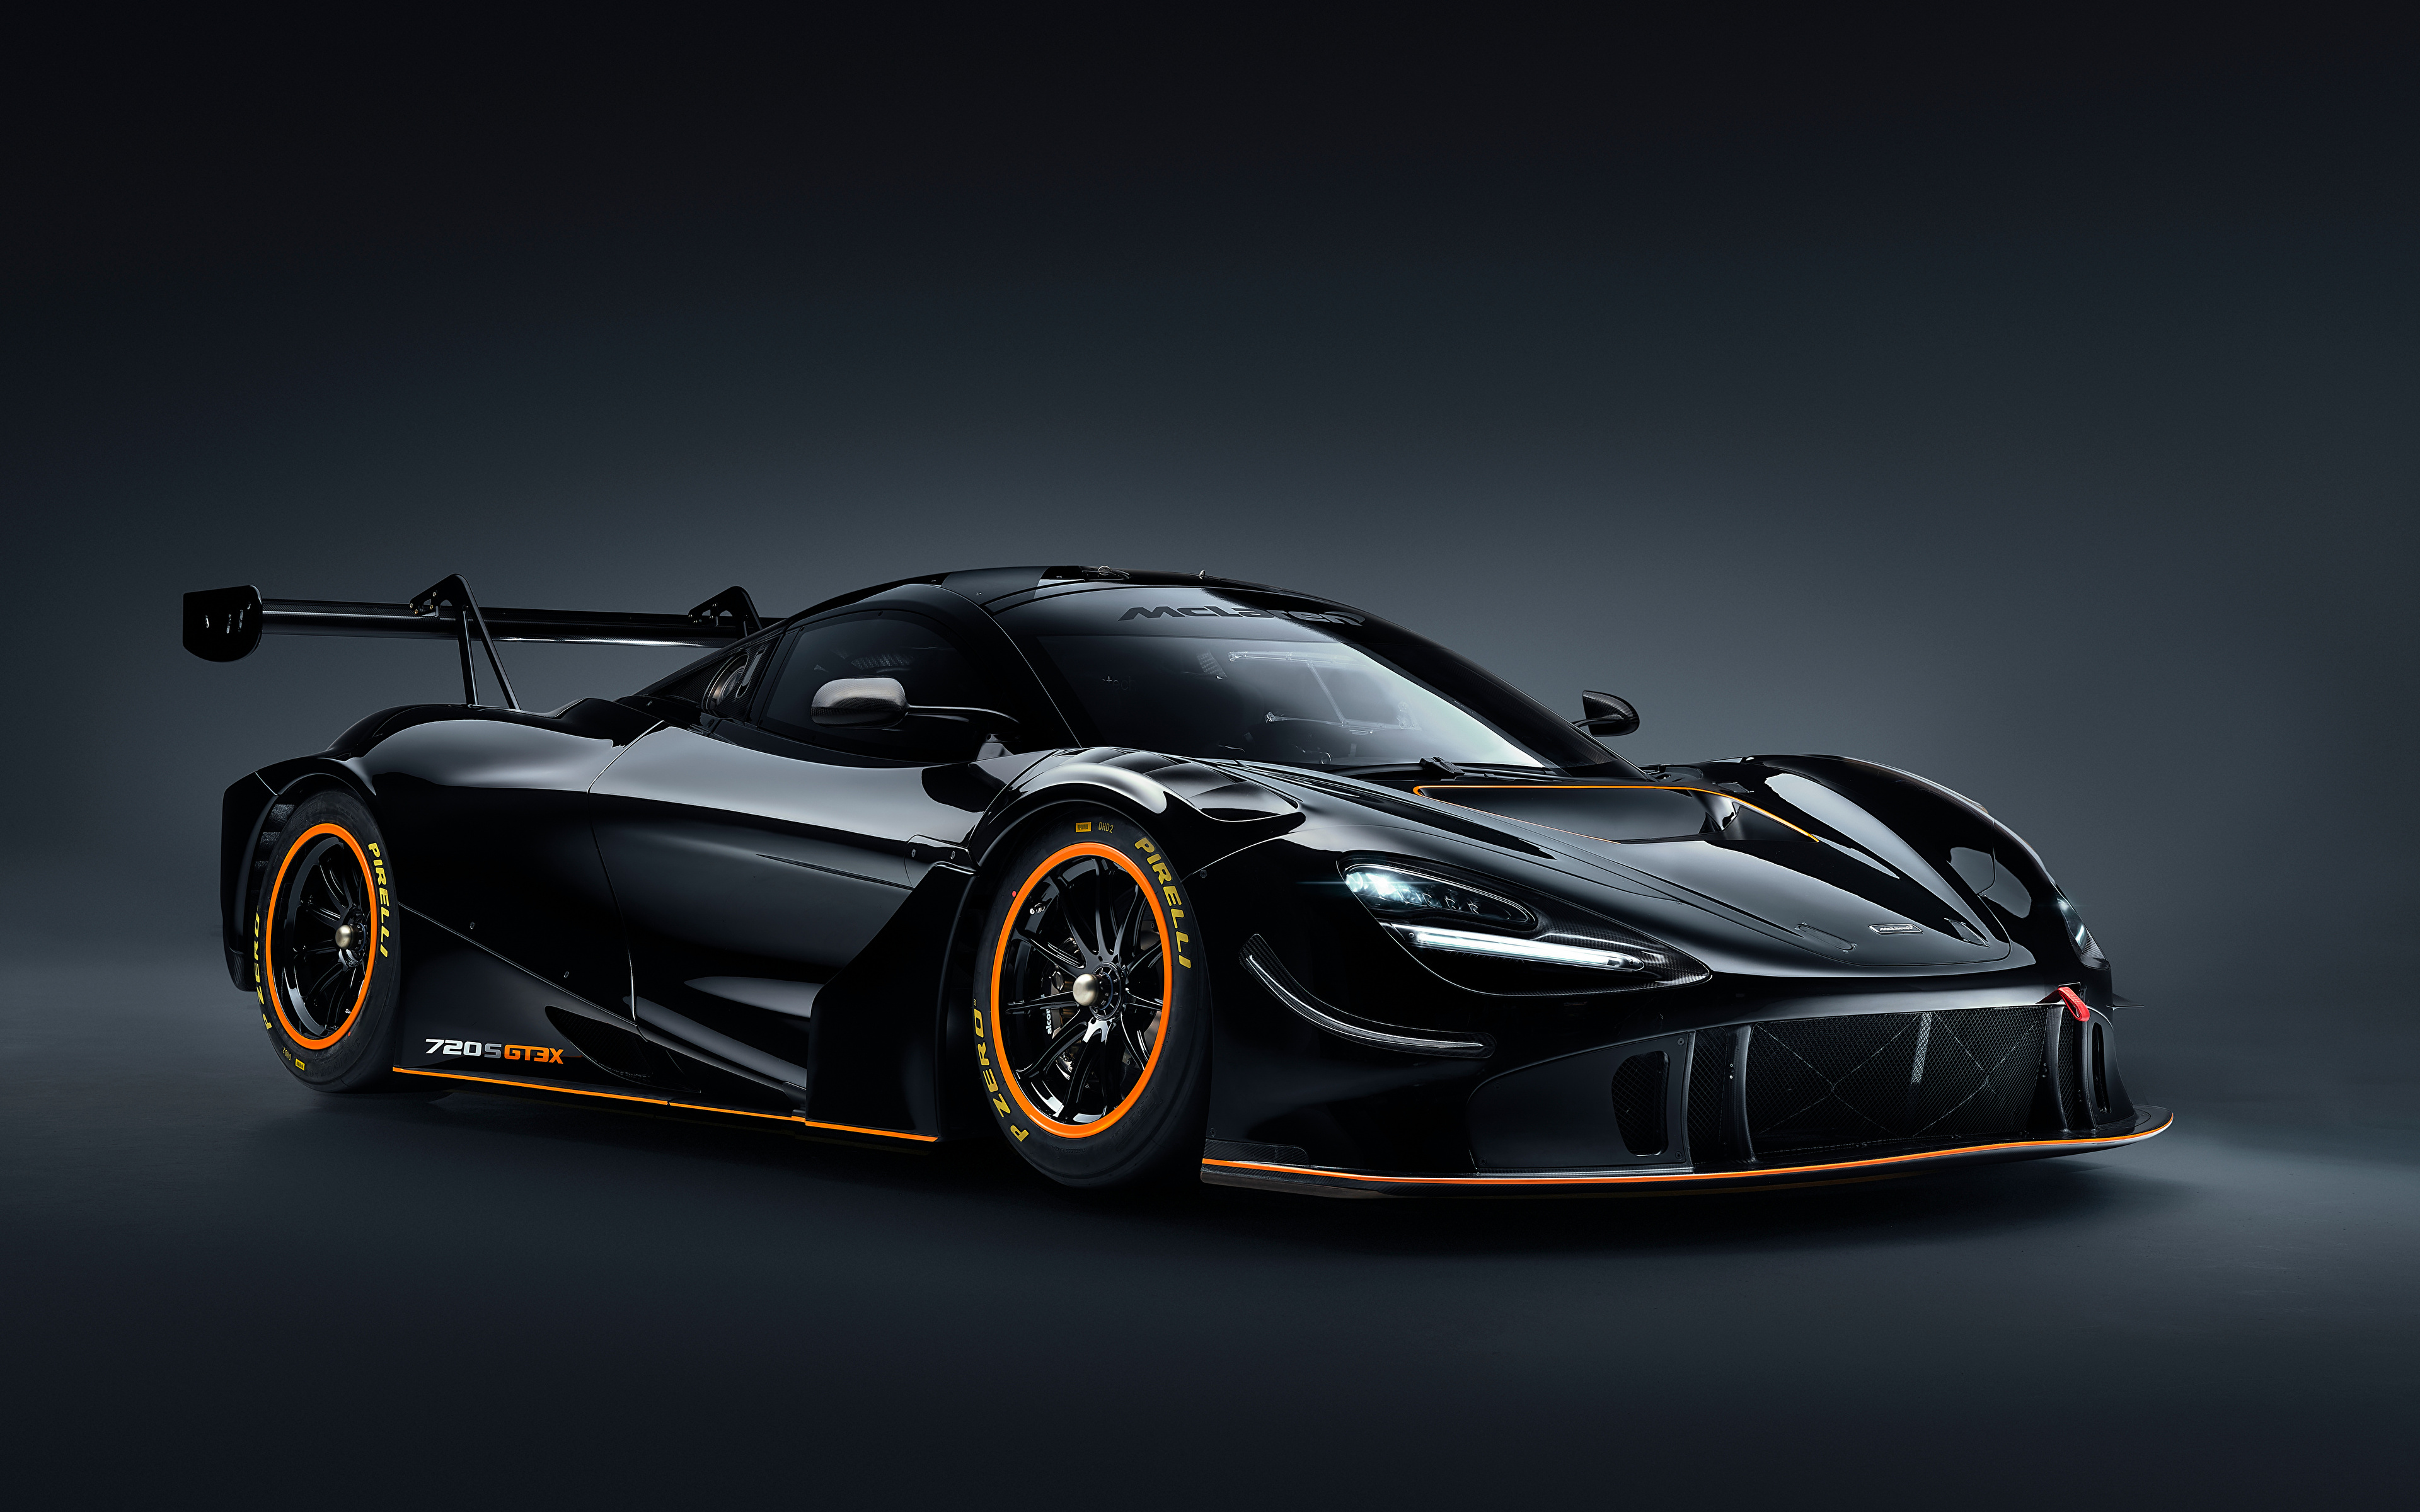 Afbeelding McLaren 720S GT3X, 2021 Zwart kleur Metallic automobiel 3840x2400 Auto auto's